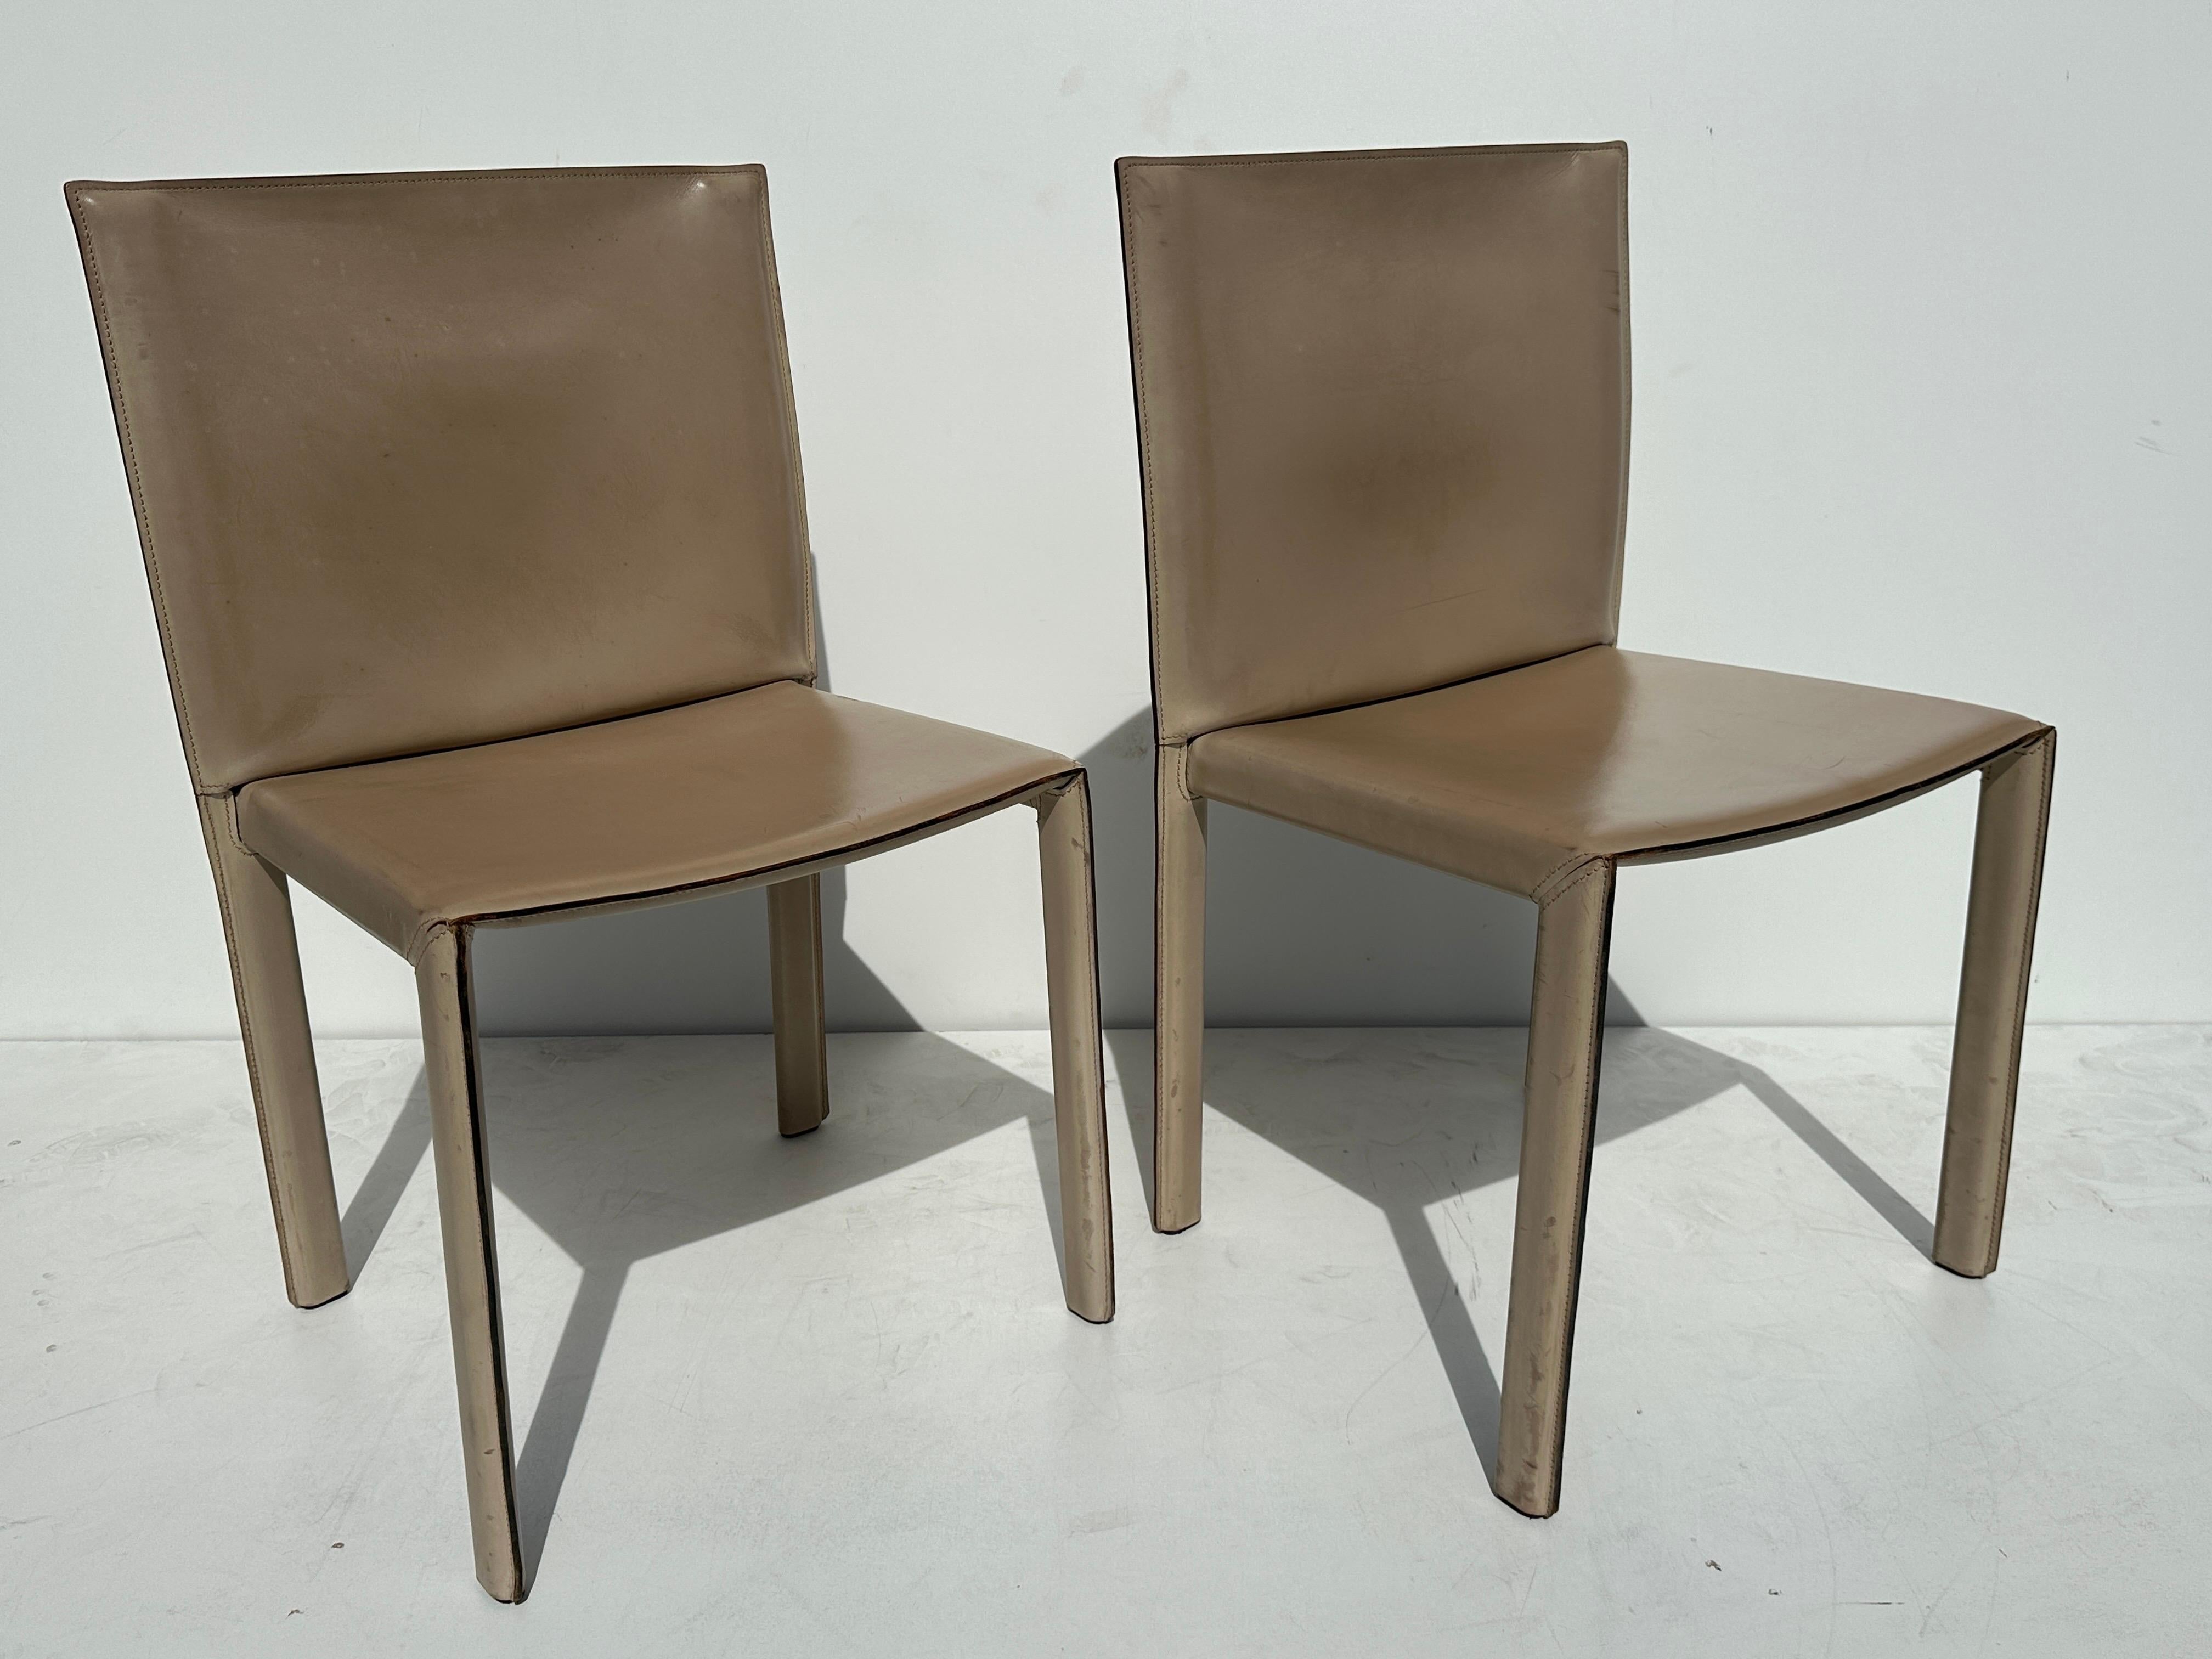 Paire de chaises latérales en cuir patiné et cousu à la main par Enrico Pellizzoni.
Toutes les coutures sont intactes et ne présentent aucune déchirure. Usure normale d'utilisation avec une belle patine naturelle.